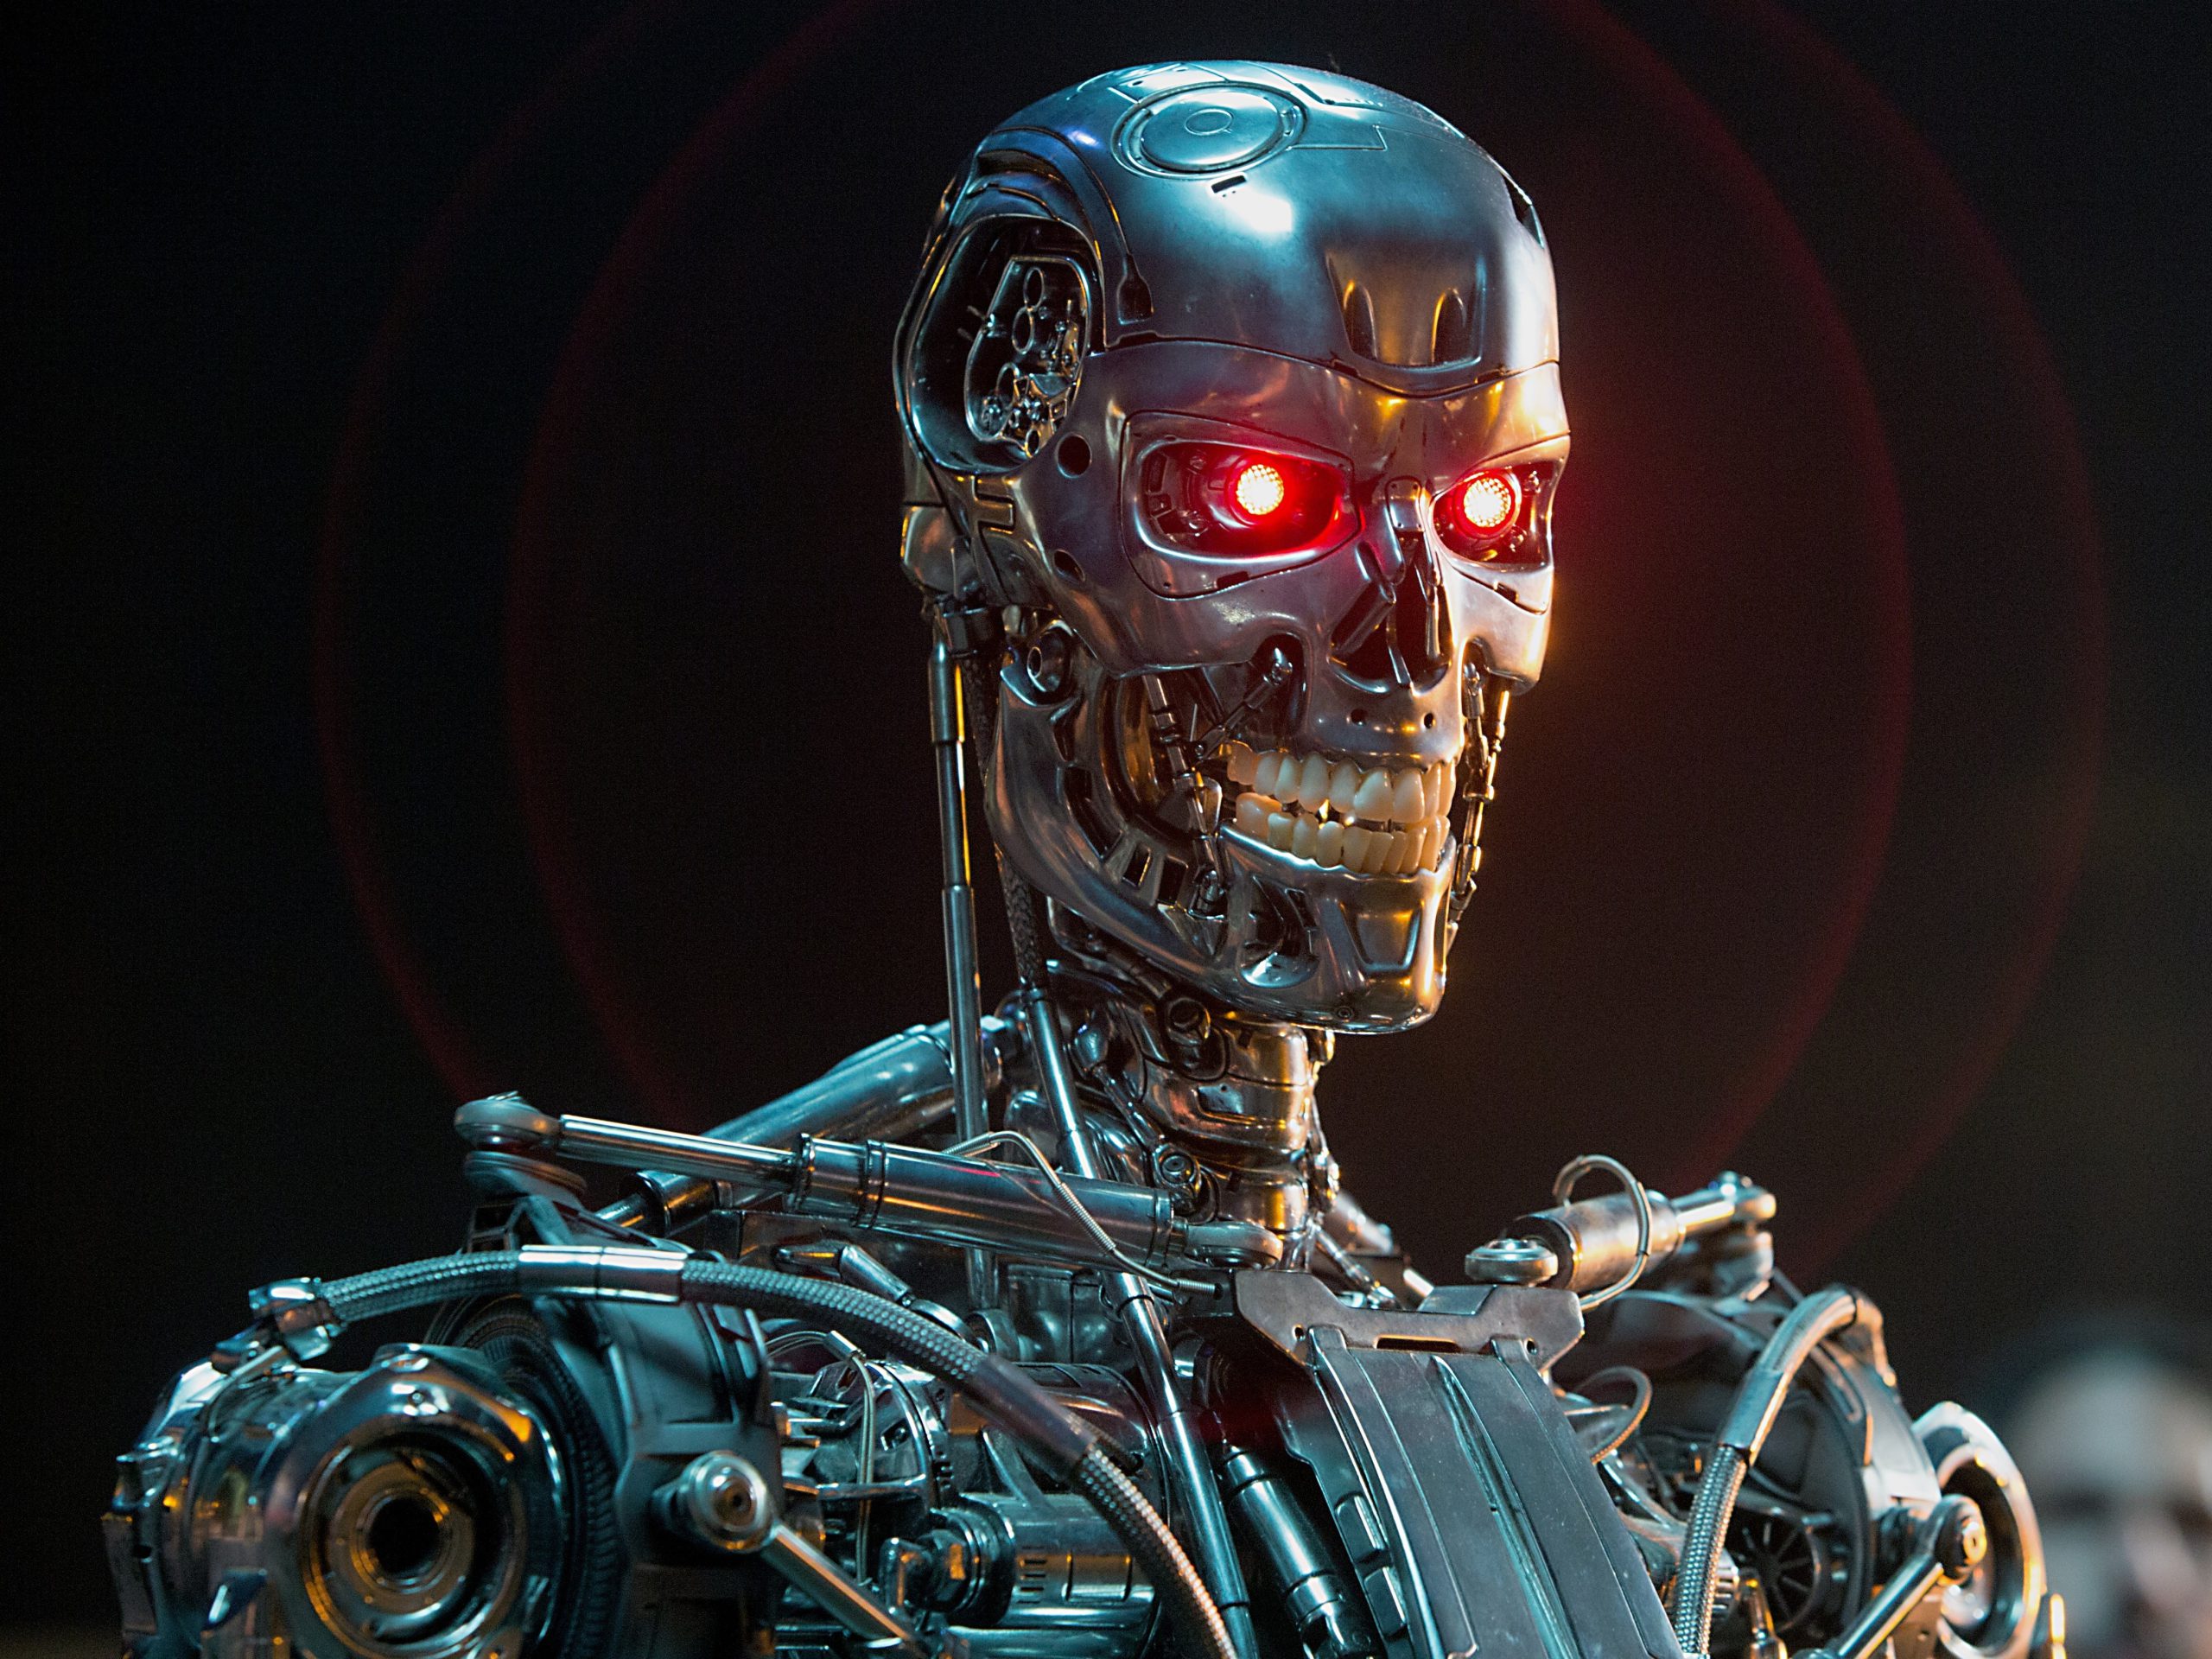  Dacă inteligenţa artificială ar decide să distrugă omenirea, cum ar proceda?